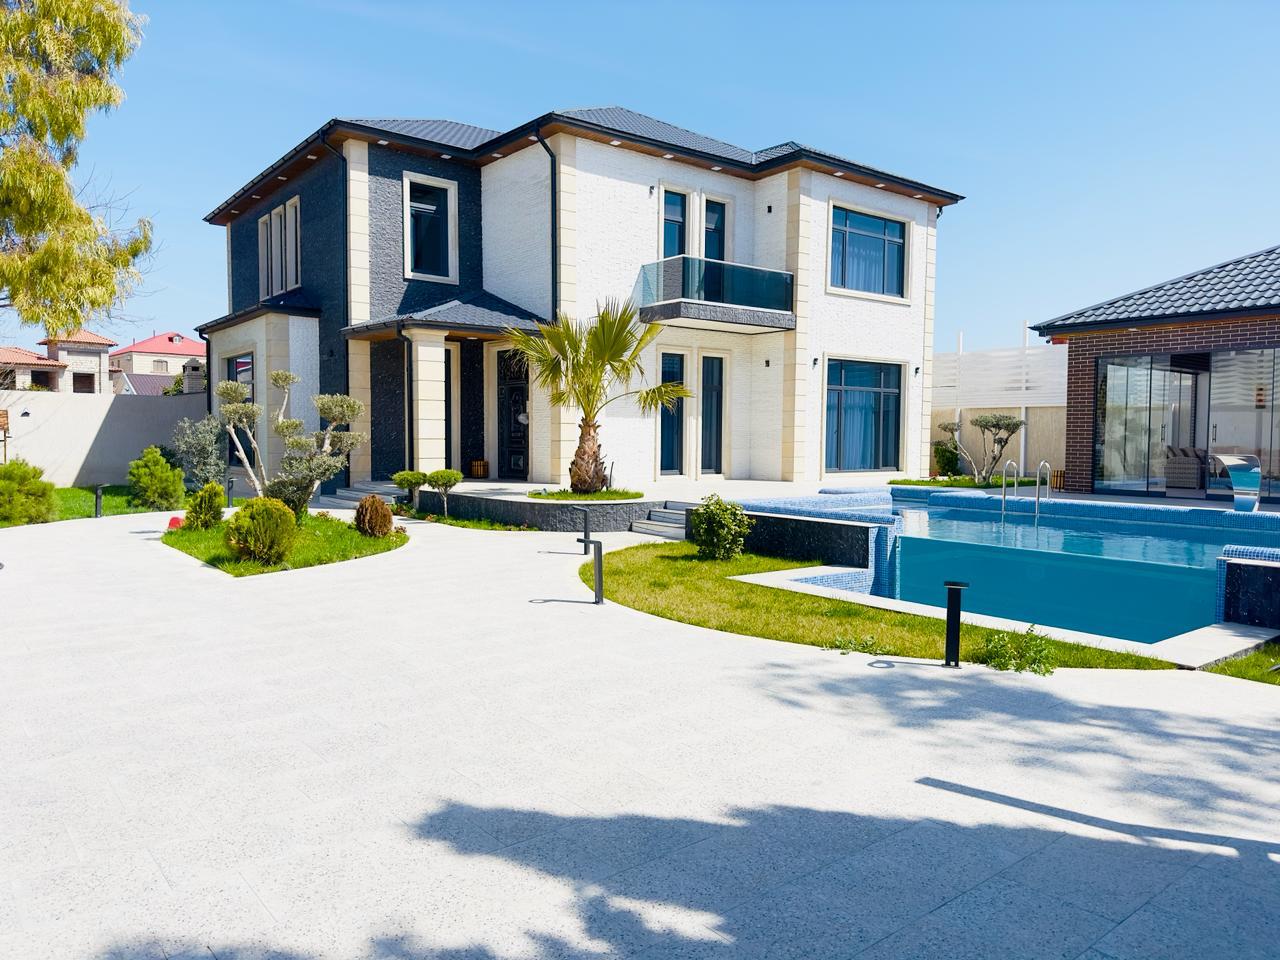 Недвижимость — Баку, Азербайджан: Купить дом в Баку , продажа и аренда домов в Мардакянах